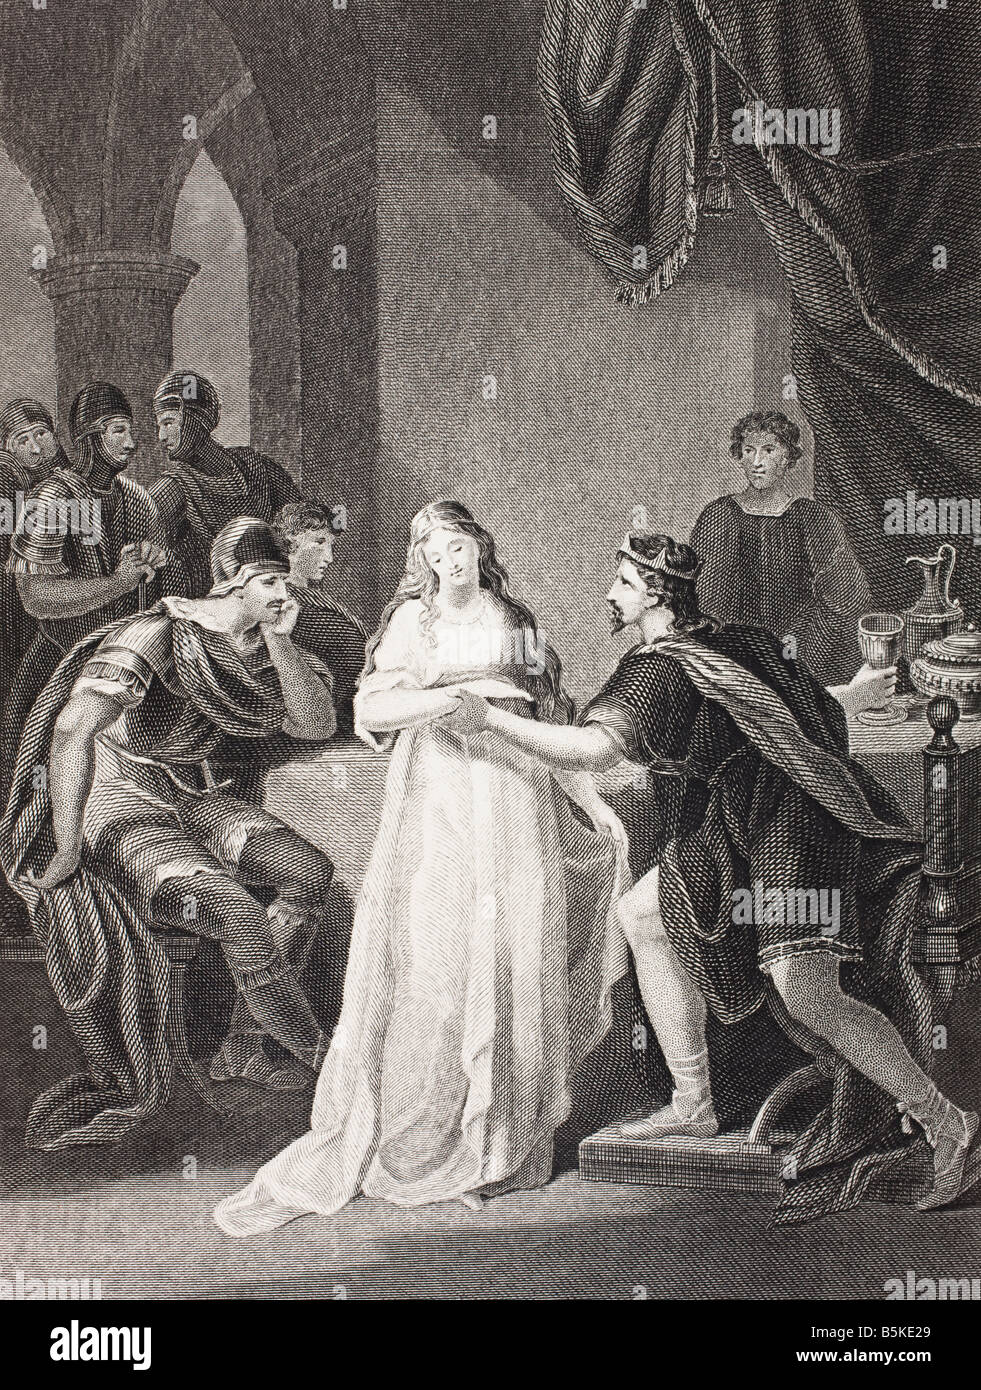 Illustration pour la pièce de Vortigern et Rowena par William Henry Ireland. Du livre galerie de portraits historiques publiés c.1880 Banque D'Images